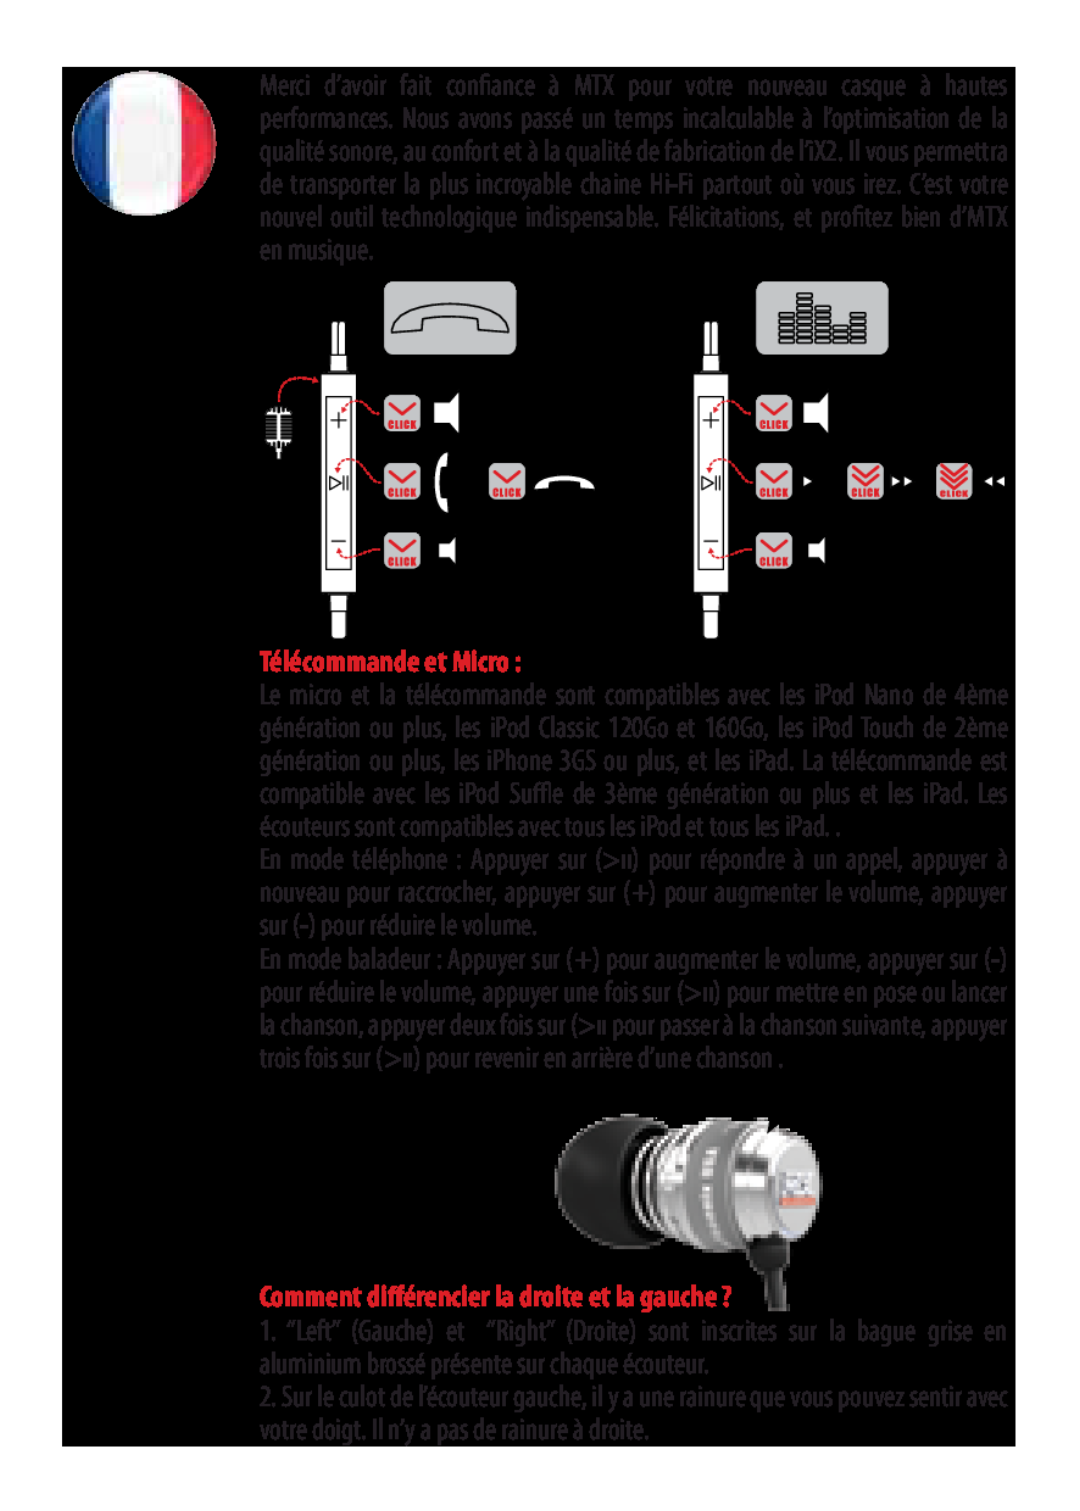 MTX Audio manual iX2 - Manuel, Télécommande et Micro, Comment différencier la droite et la gauche ? 